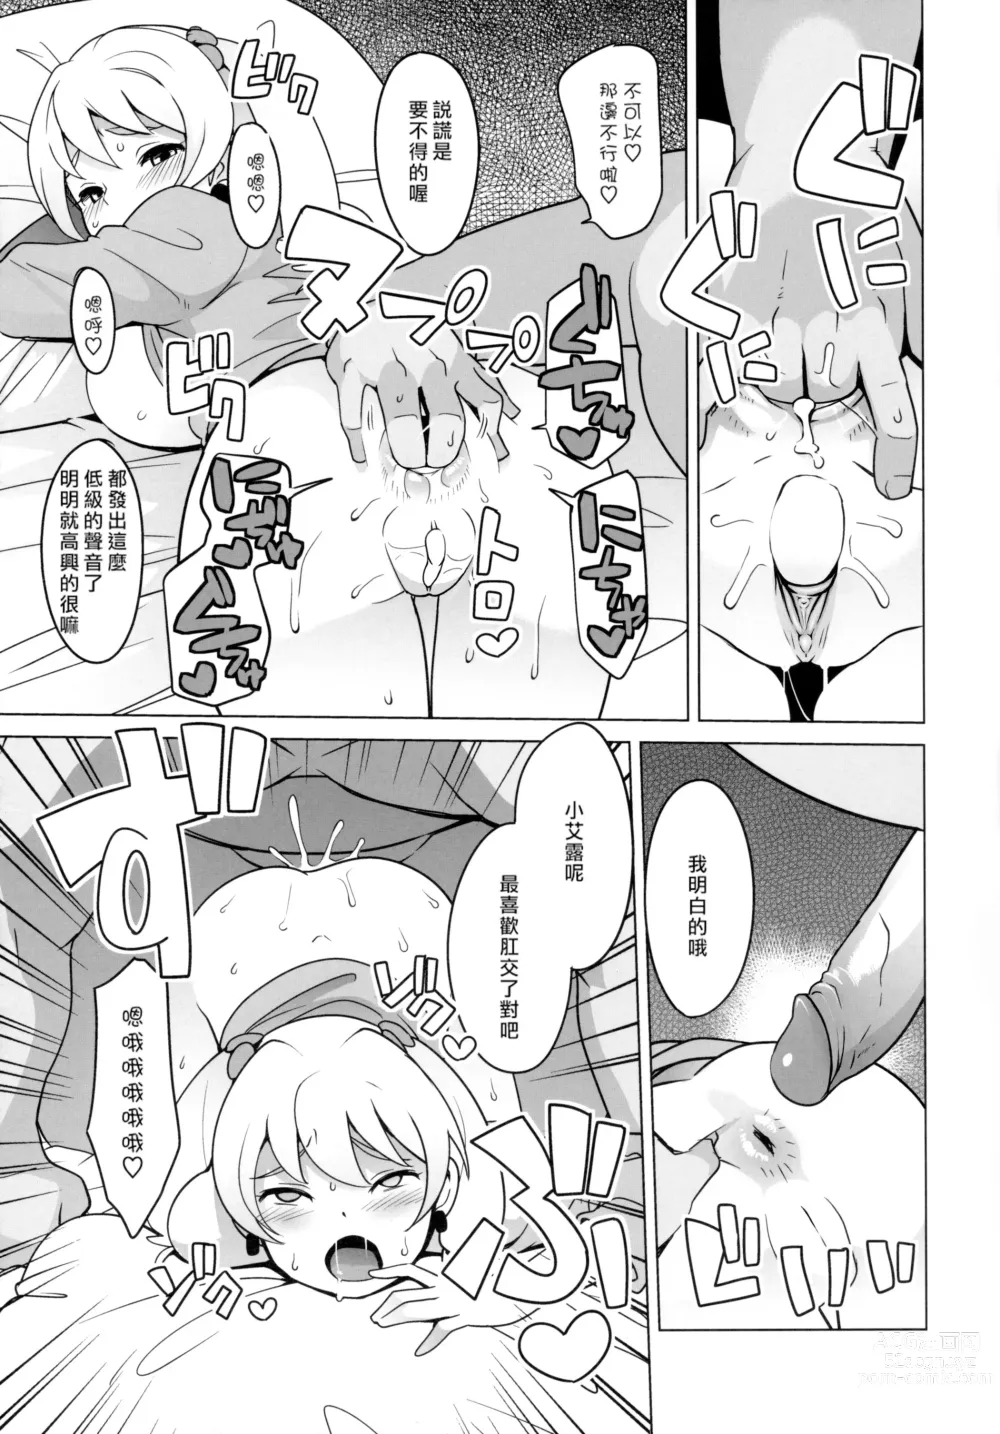 Page 14 of doujinshi Chibikko Bitch Hunters (decensored)